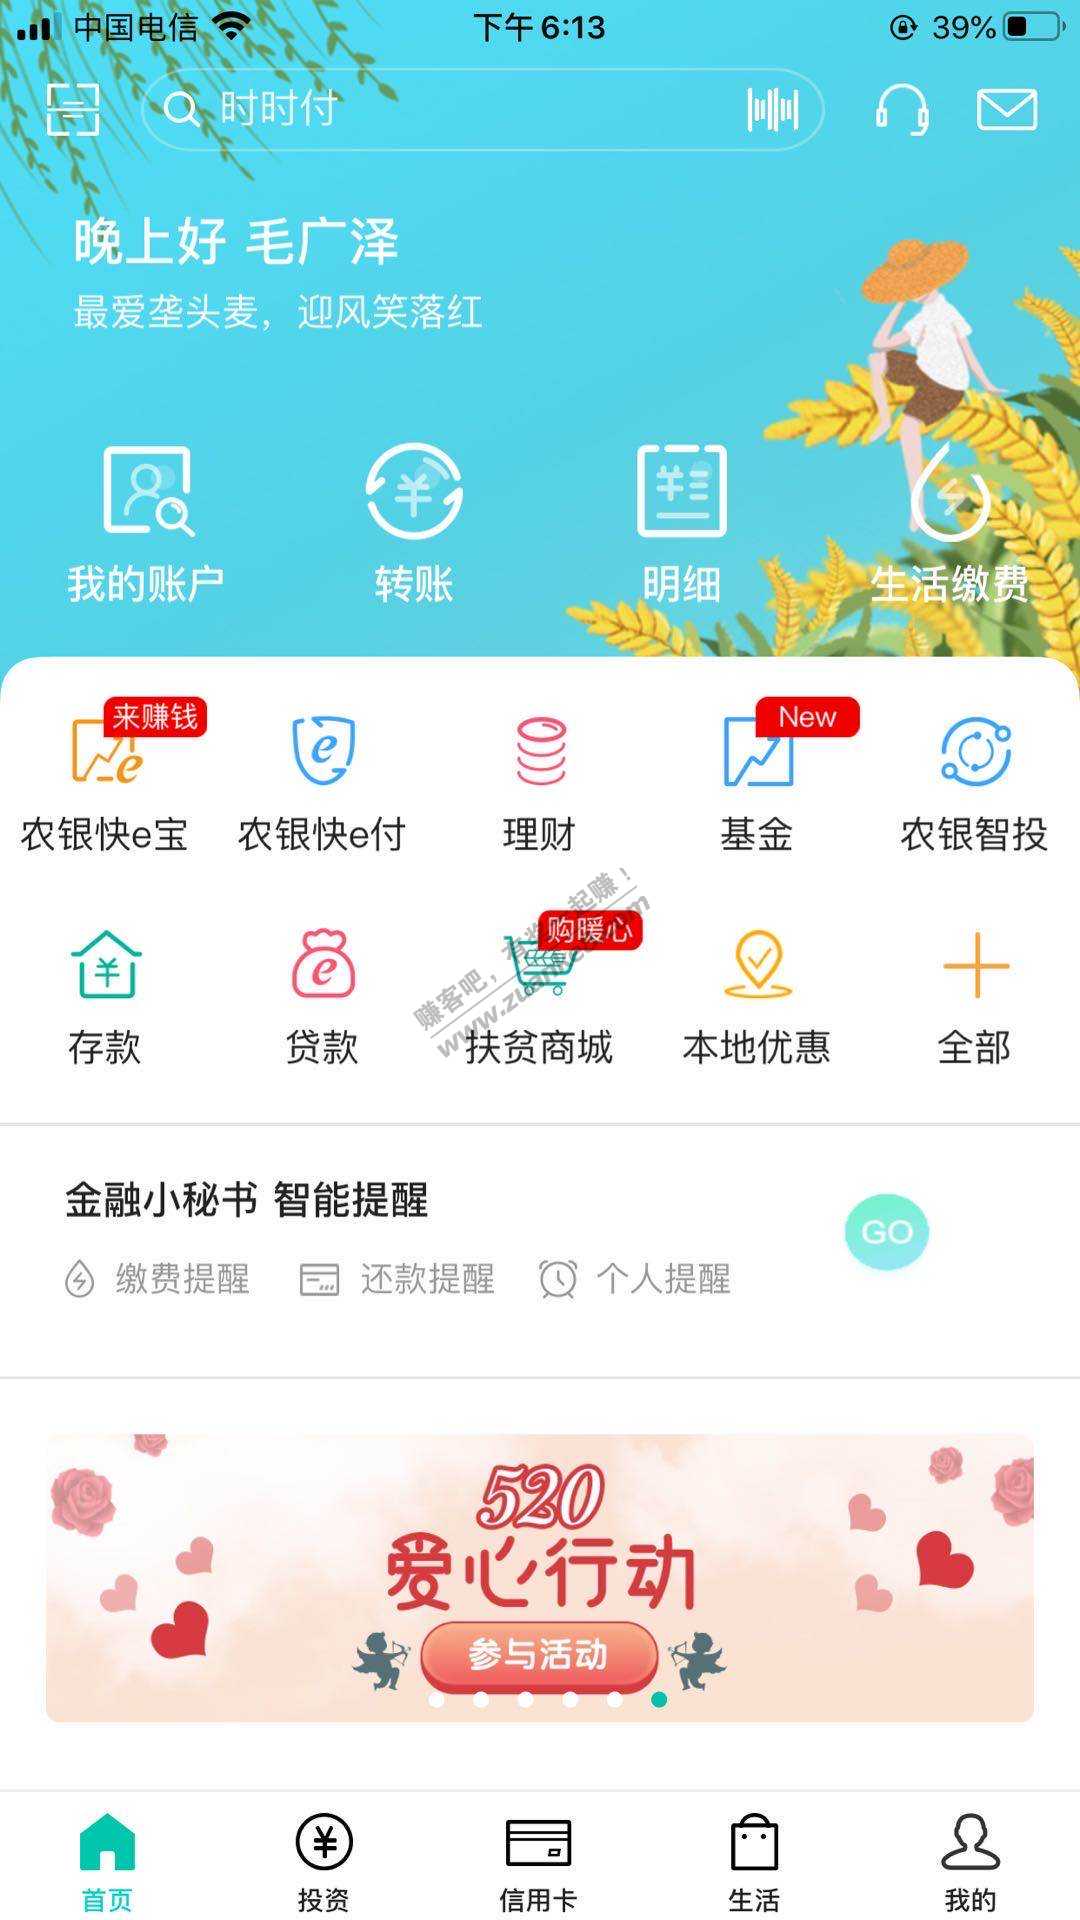 农行app首页-爱心行动10话费-惠小助(52huixz.com)